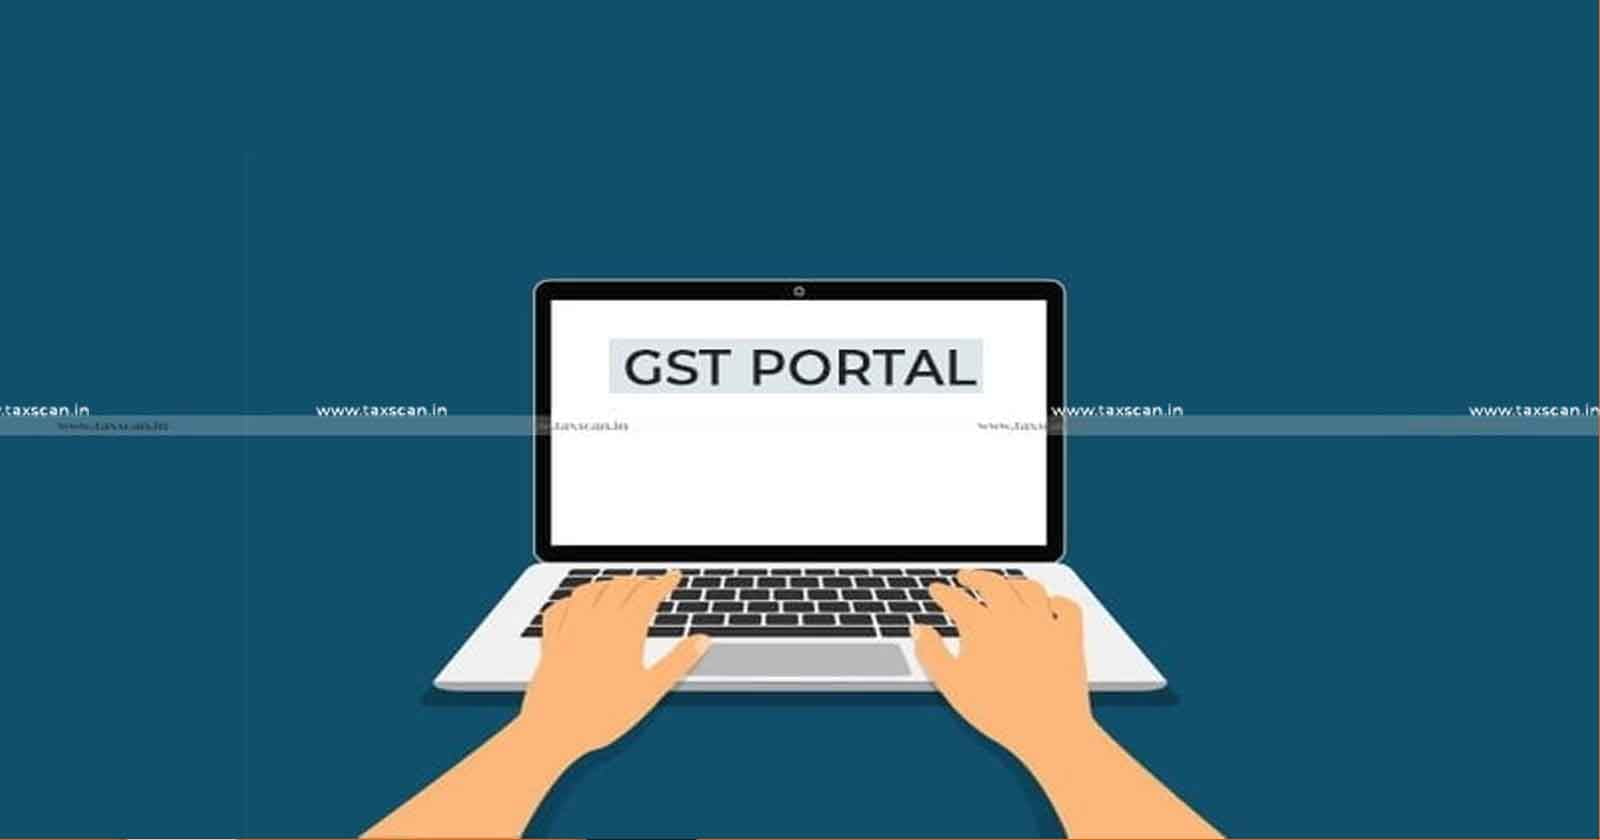 GST Portal Update -GST Portal - GSTN - view IRN using Document Number - IRN using Document Number - Document Number - IRN- taxscan